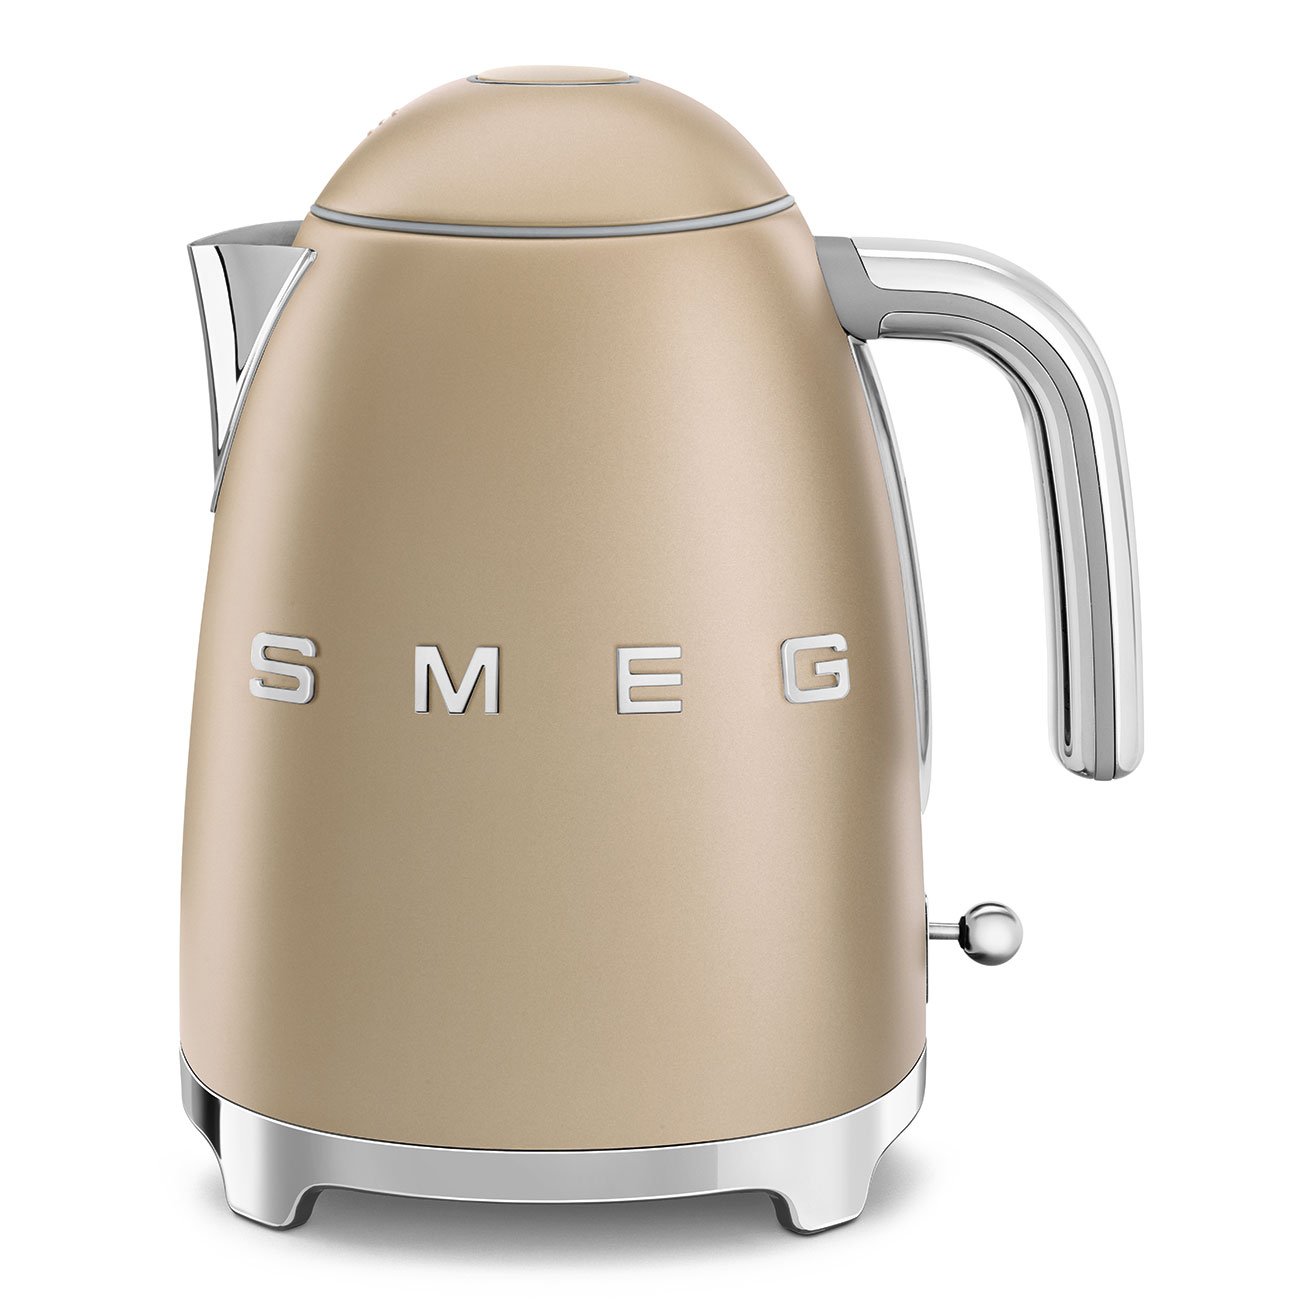 SMEG / kettle / matt, gold, silver